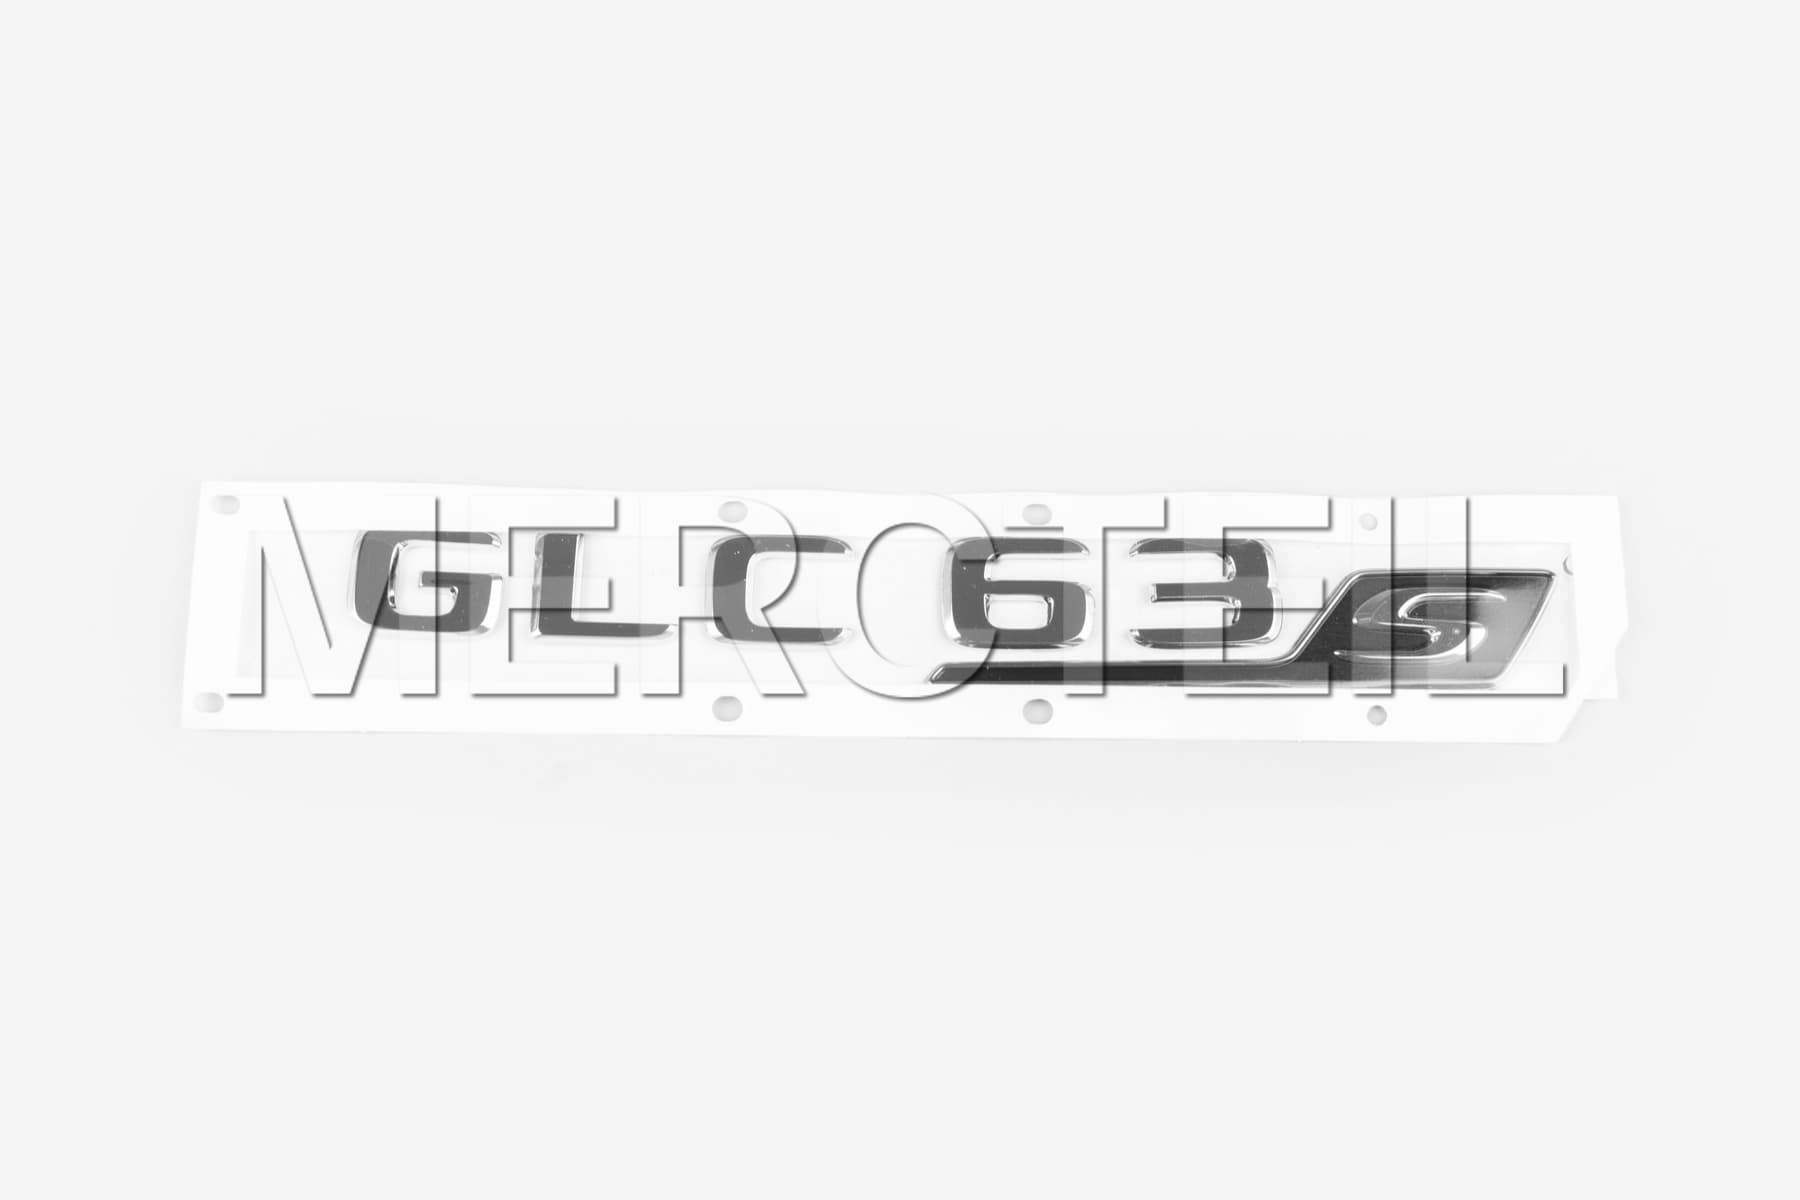 GLC63 SUV Model Logo X253 Original Mercedes AMG (Teilenummer: A2538176700)